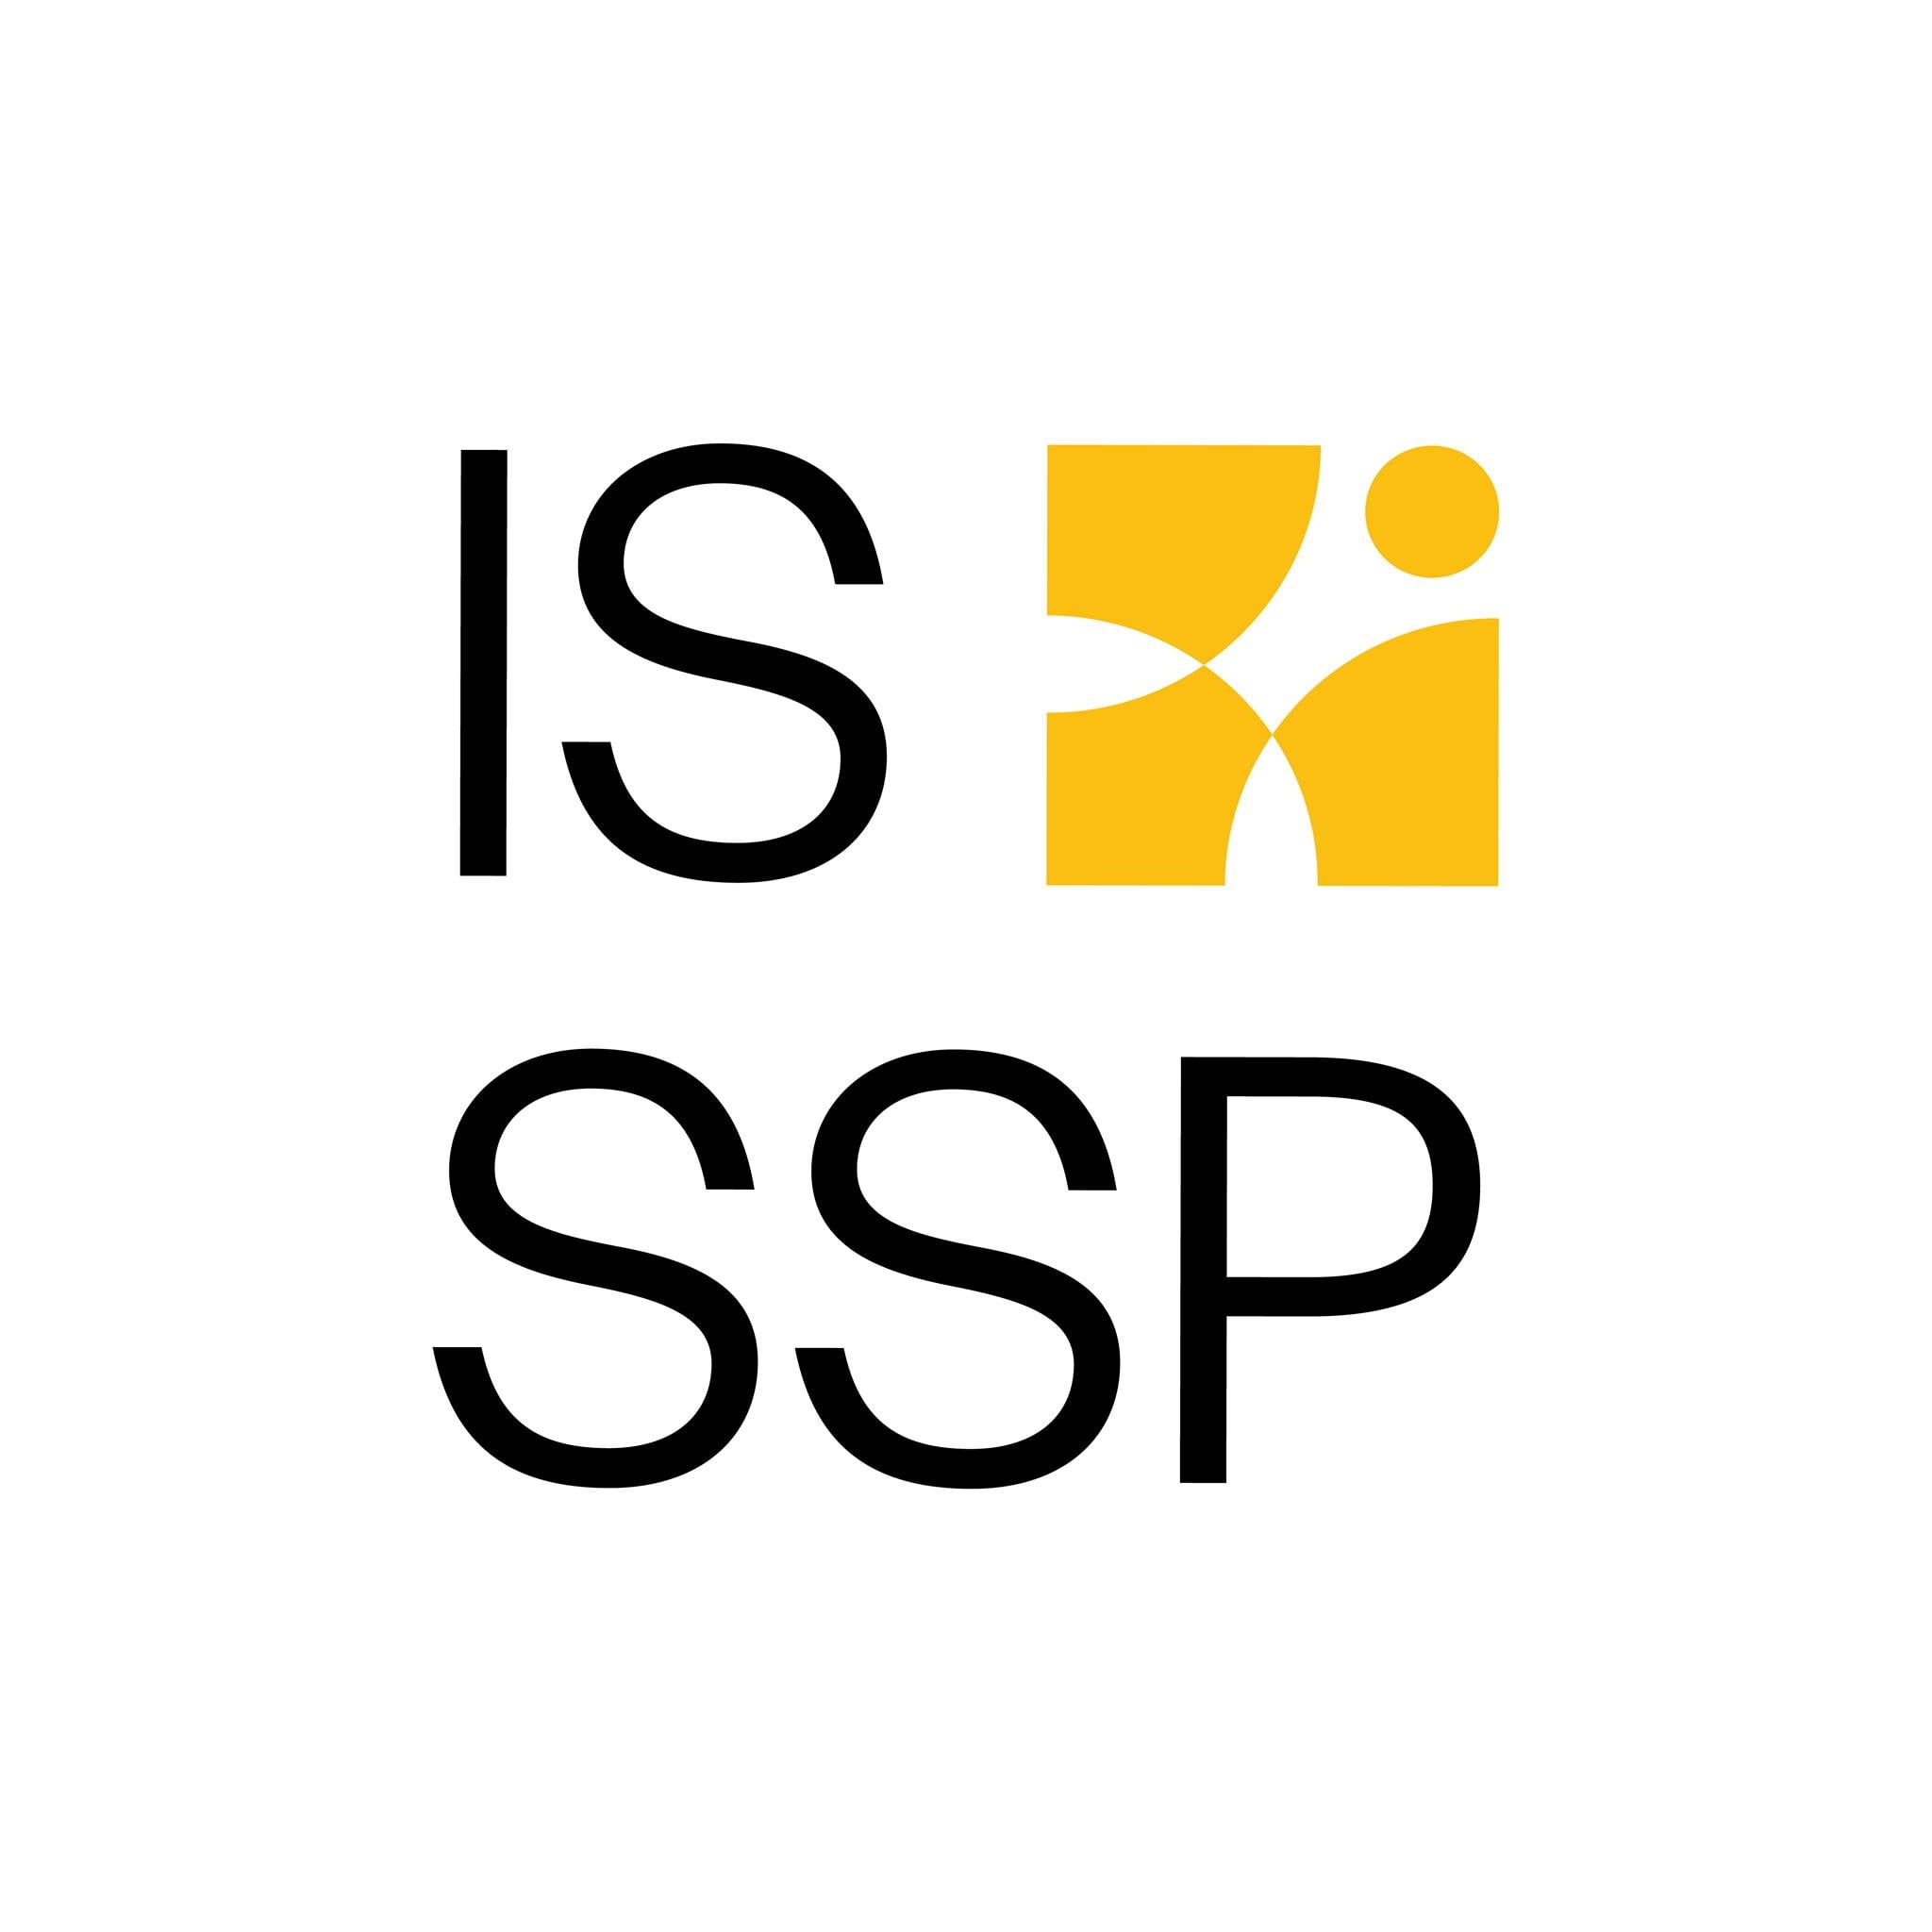 ISSSP – Instituto Superior do Serviço Social do Porto, CRL